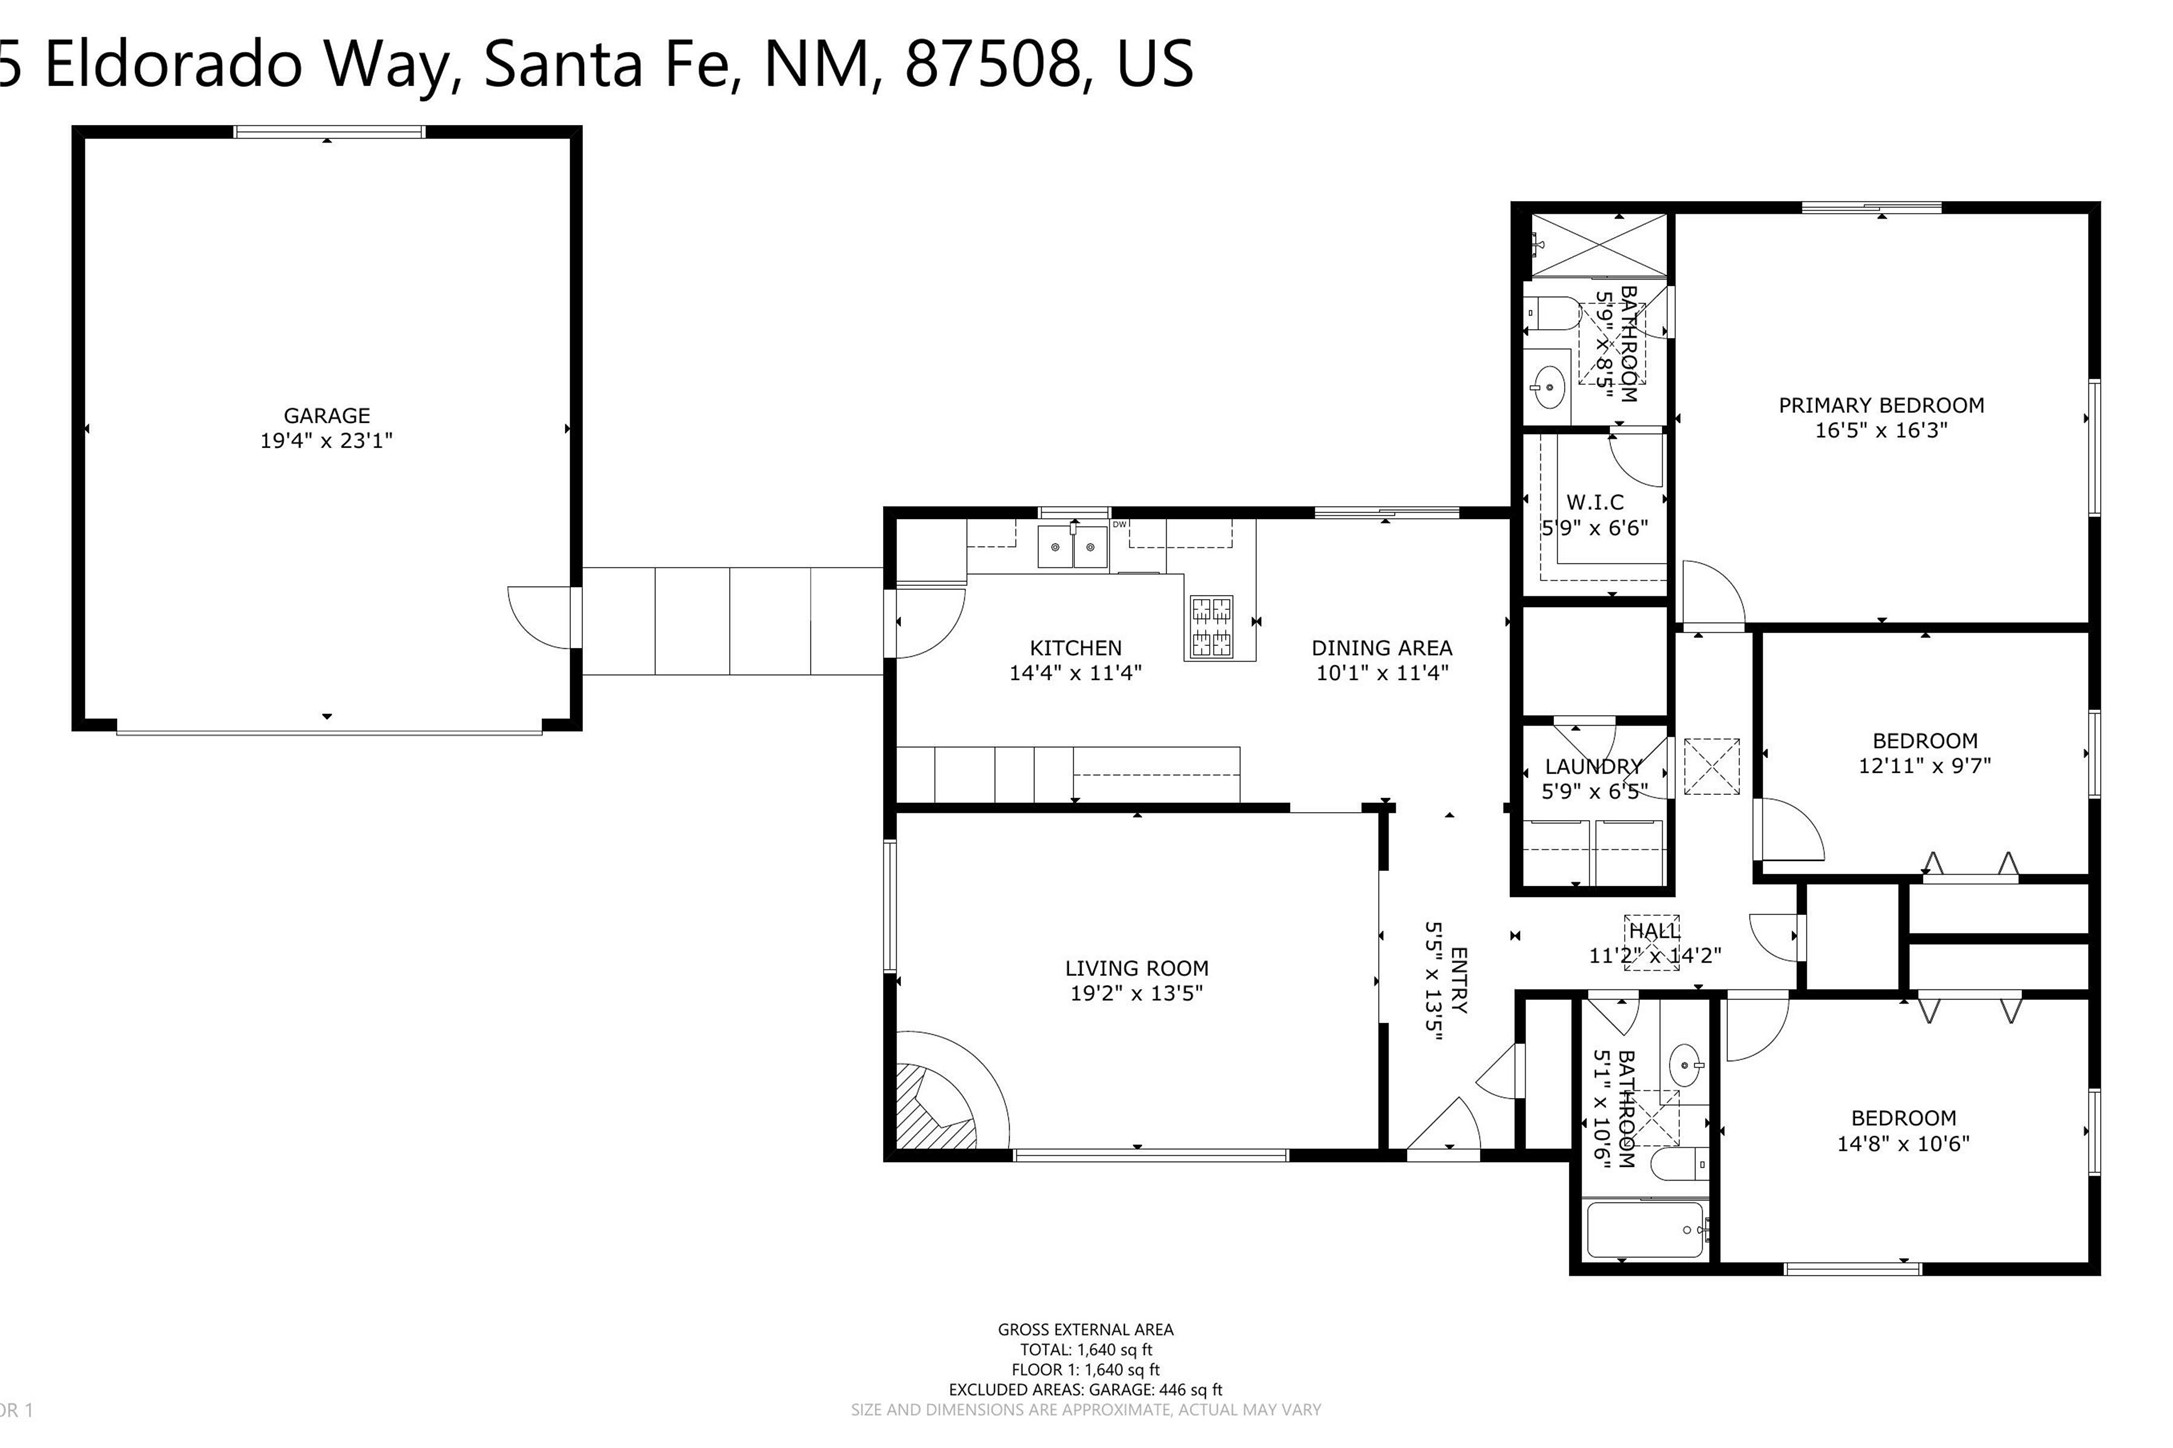 5 Eldorado Way, Santa Fe, New Mexico 87508, 3 Bedrooms Bedrooms, ,2 BathroomsBathrooms,Residential,For Sale,5 Eldorado Way,202401278